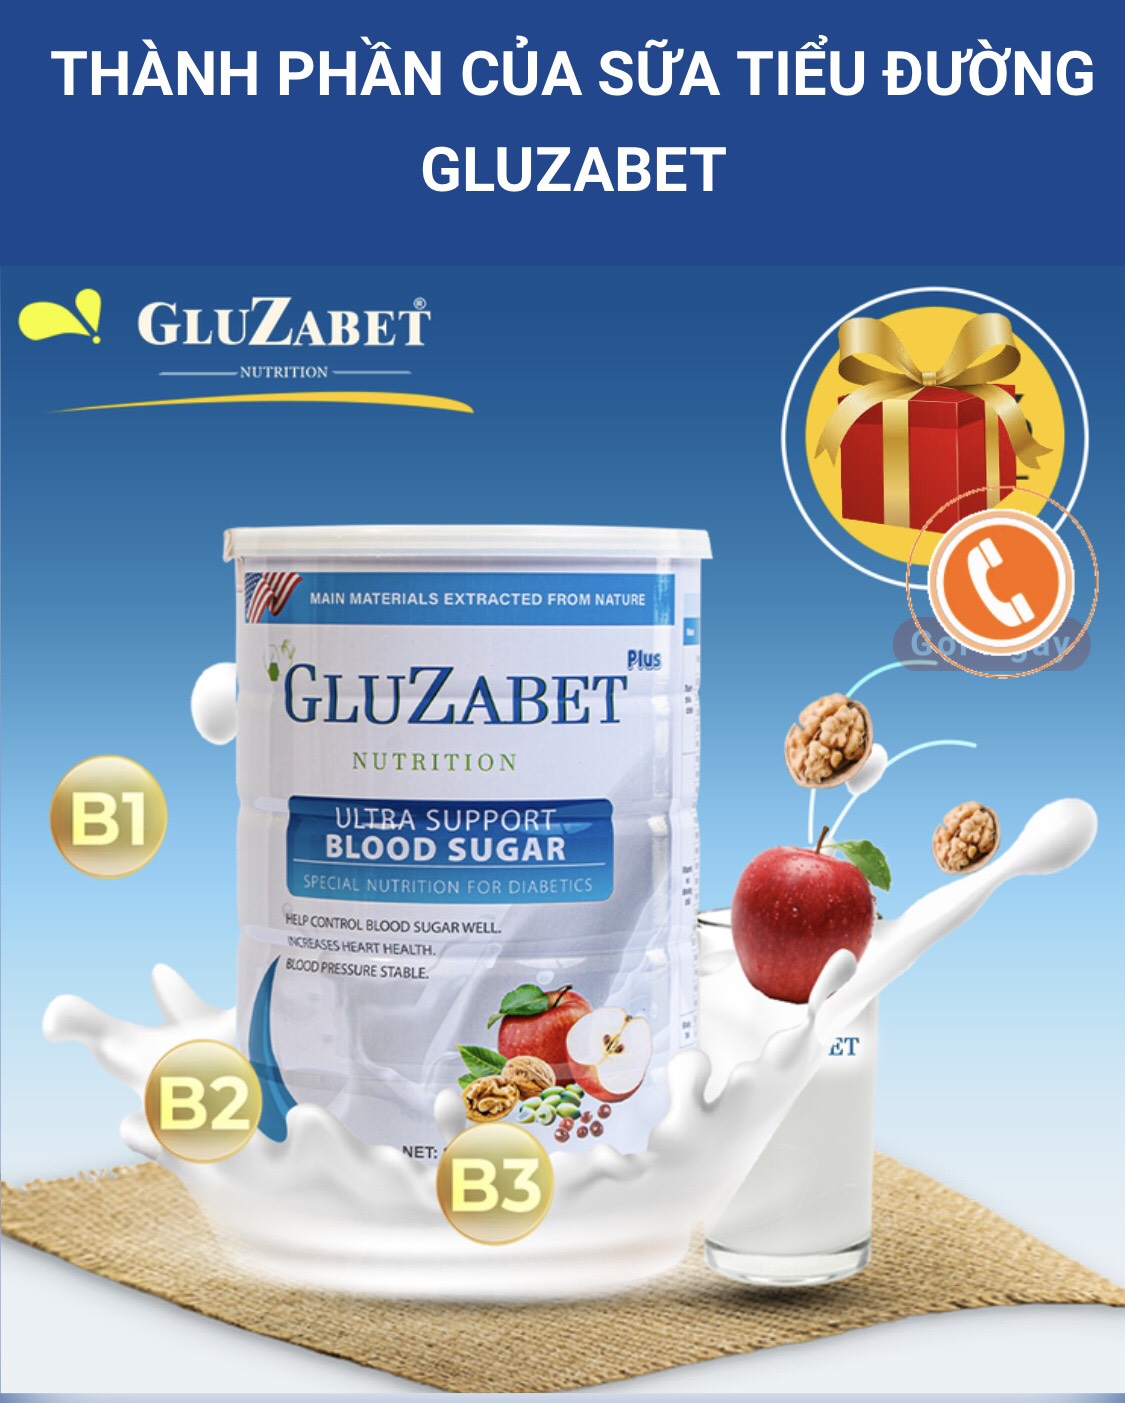 TPBVSK GluZabet tự nhận là sữa non tiểu đường cố tình quảng cáo như thuốc trị bệnh?